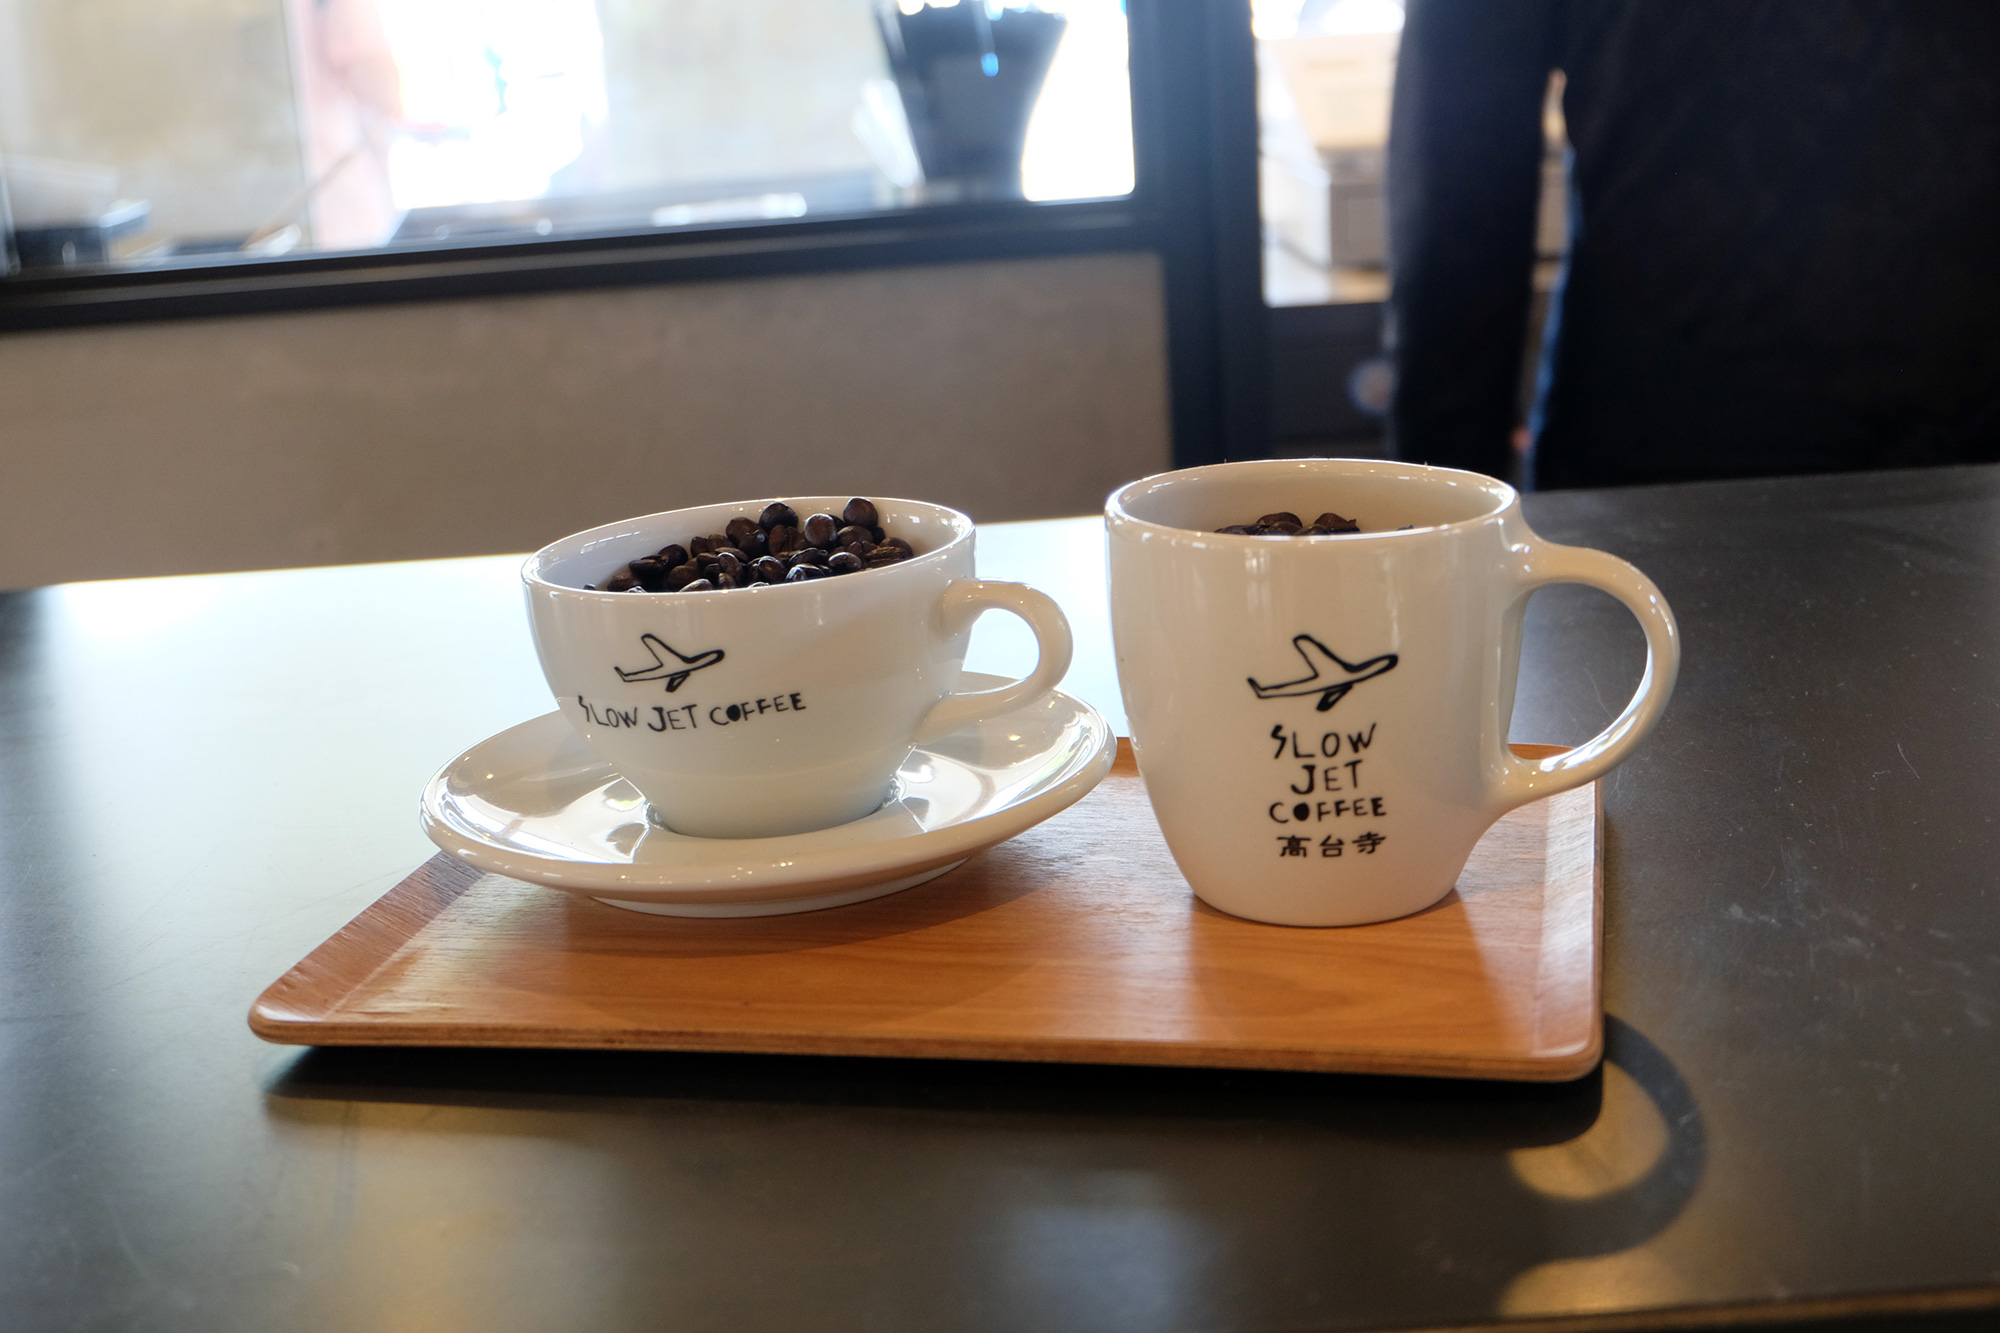 【京都】何度でも行きたいおすすめカフェ・コーヒースタンド スロージェットコーヒー 高台寺 (SLOW JET COFFEE KODAI-JI)